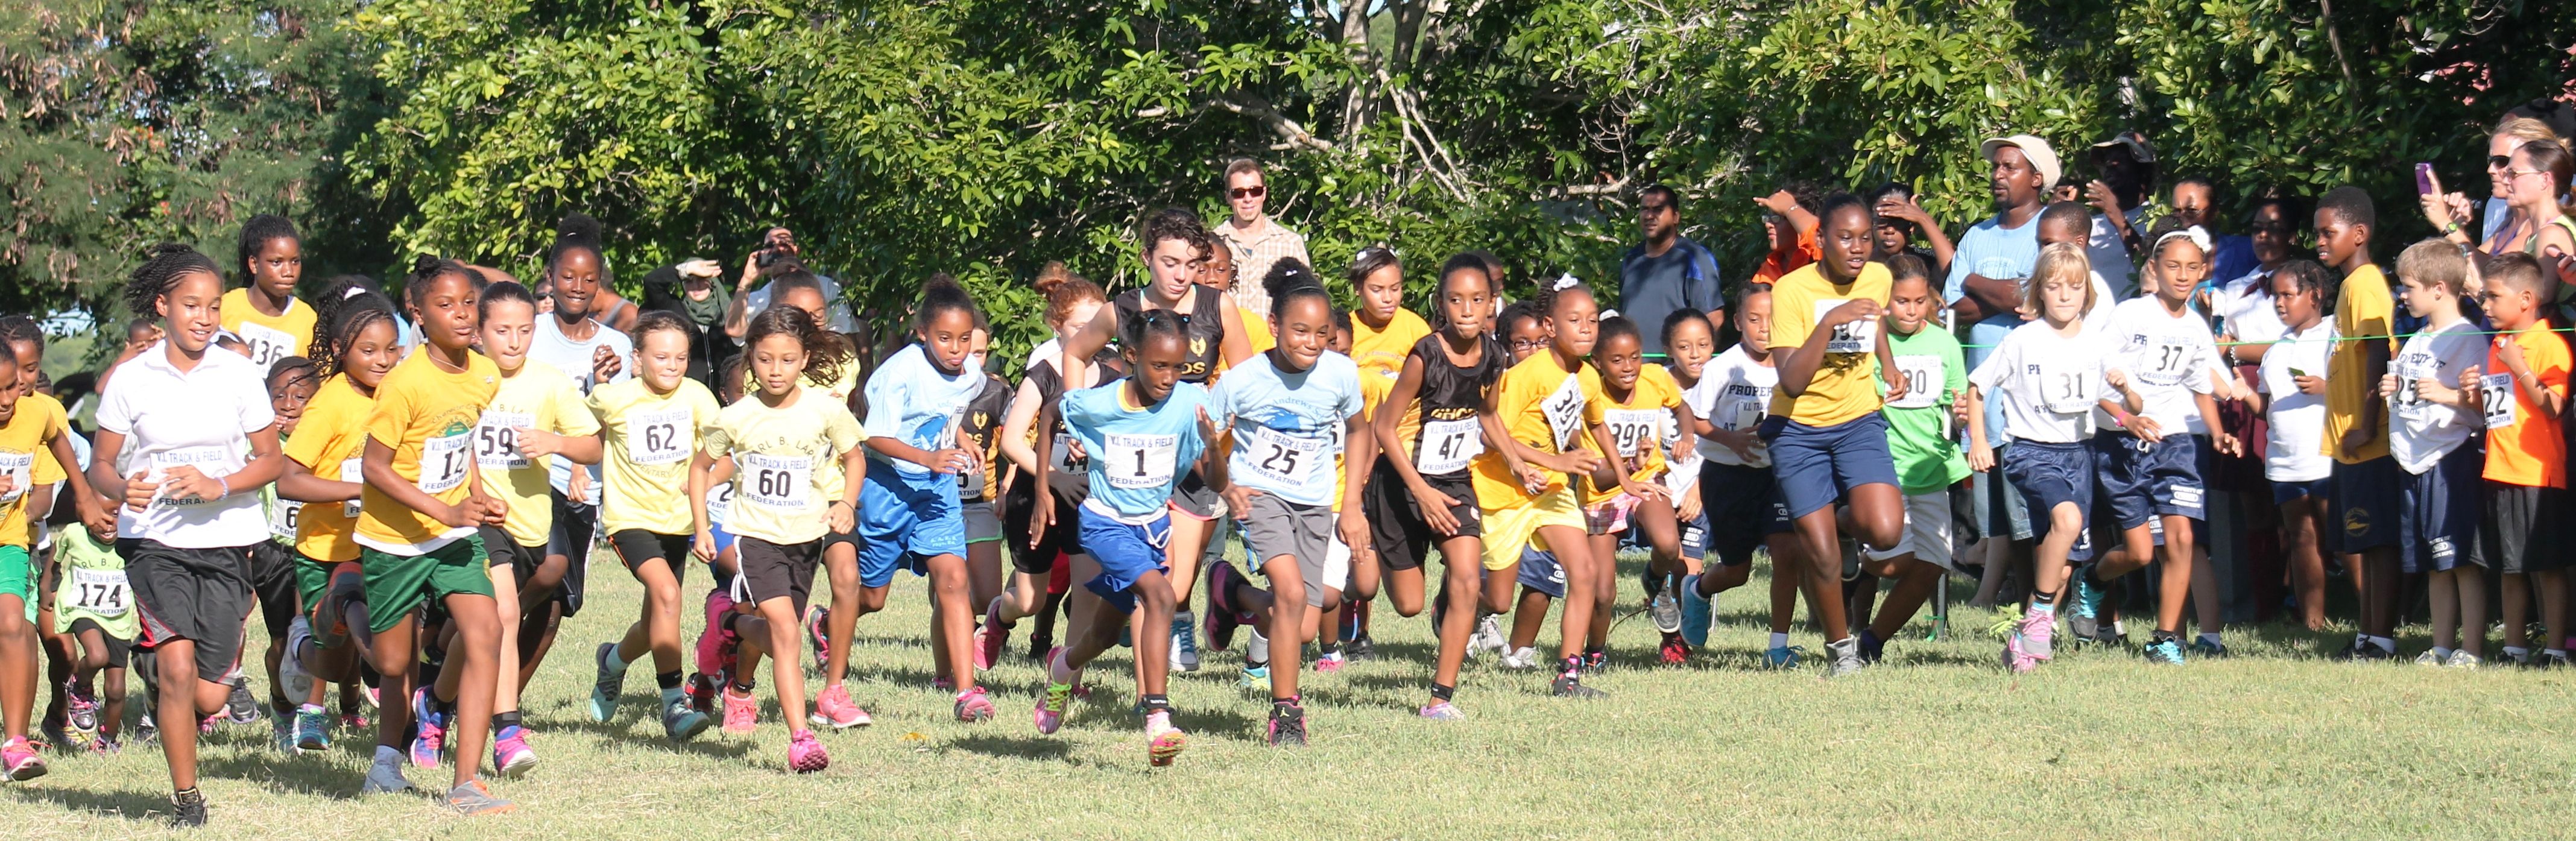 Cross-Country Elementary School Girls Race